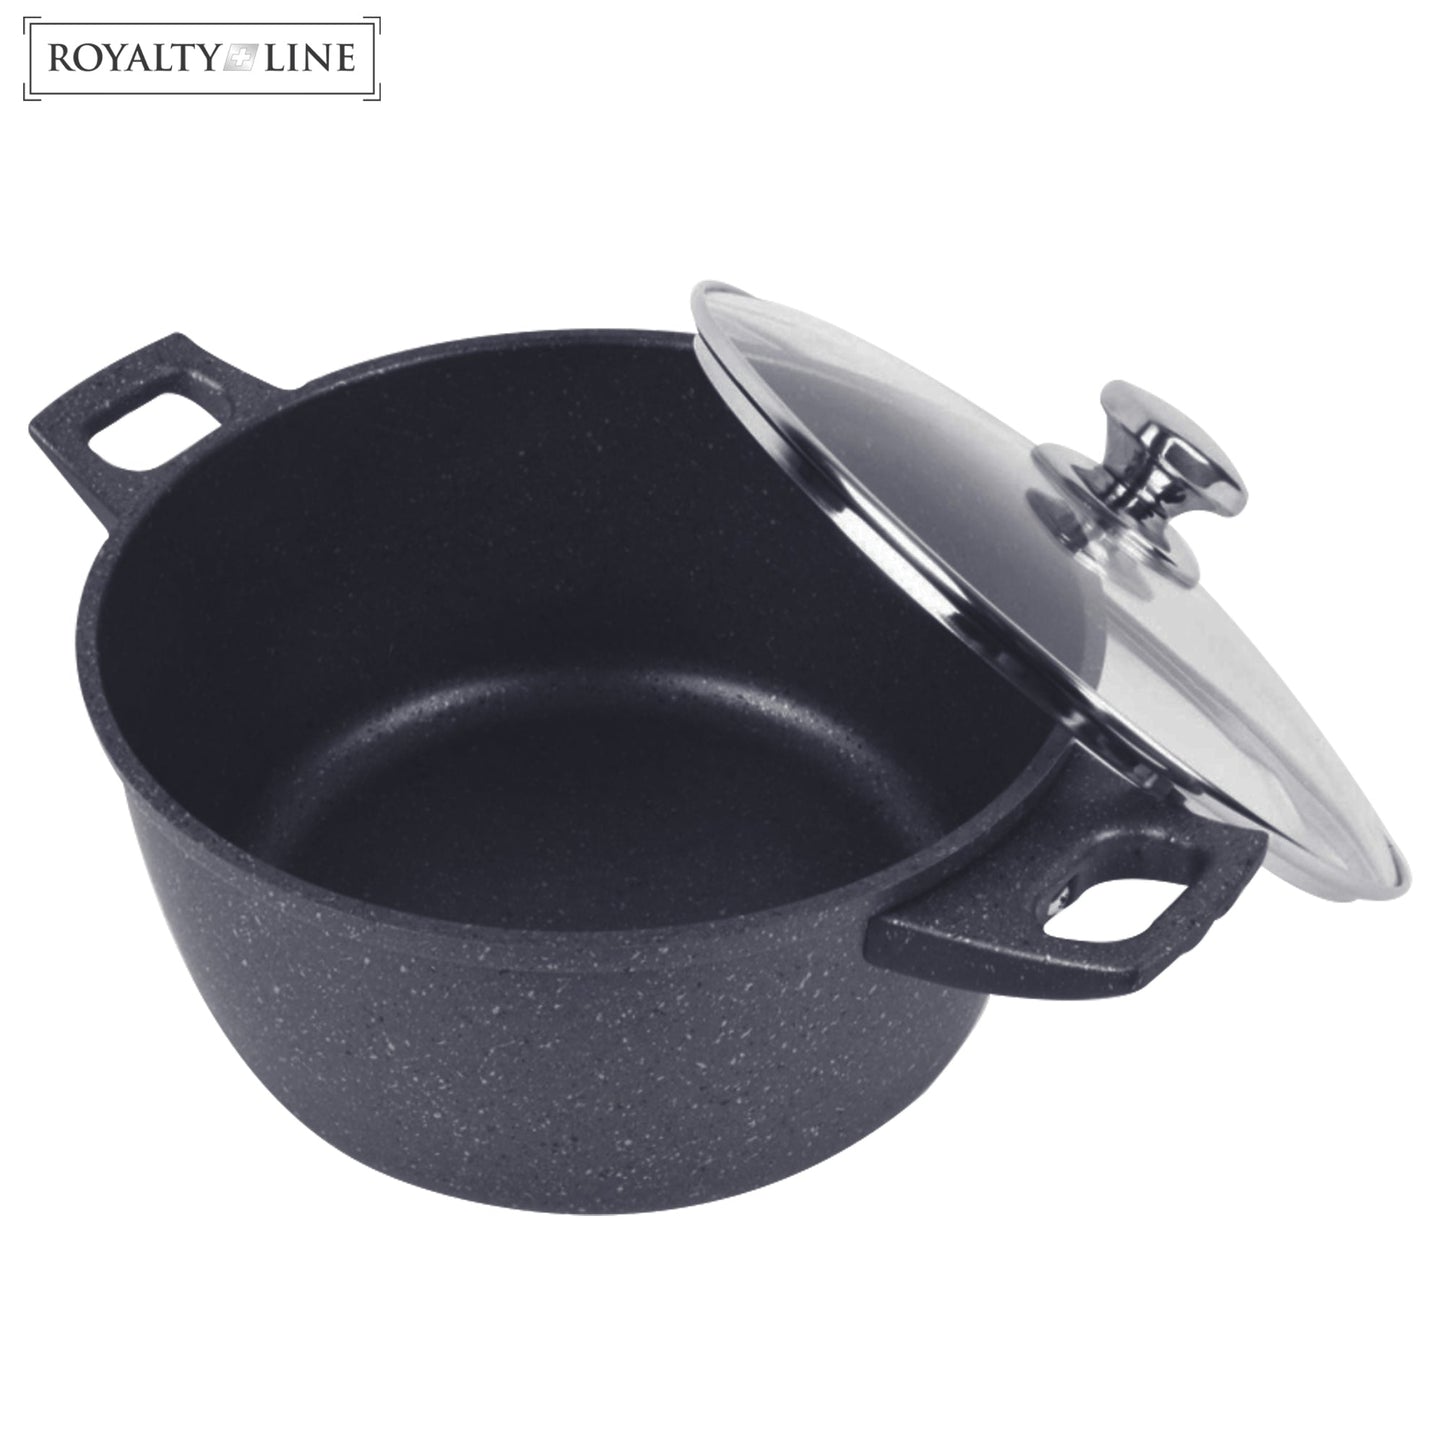 Royalty Line gesmede aluminium anti-aanbak marmeren kookpot - 30 cm grijs - Bivakshop